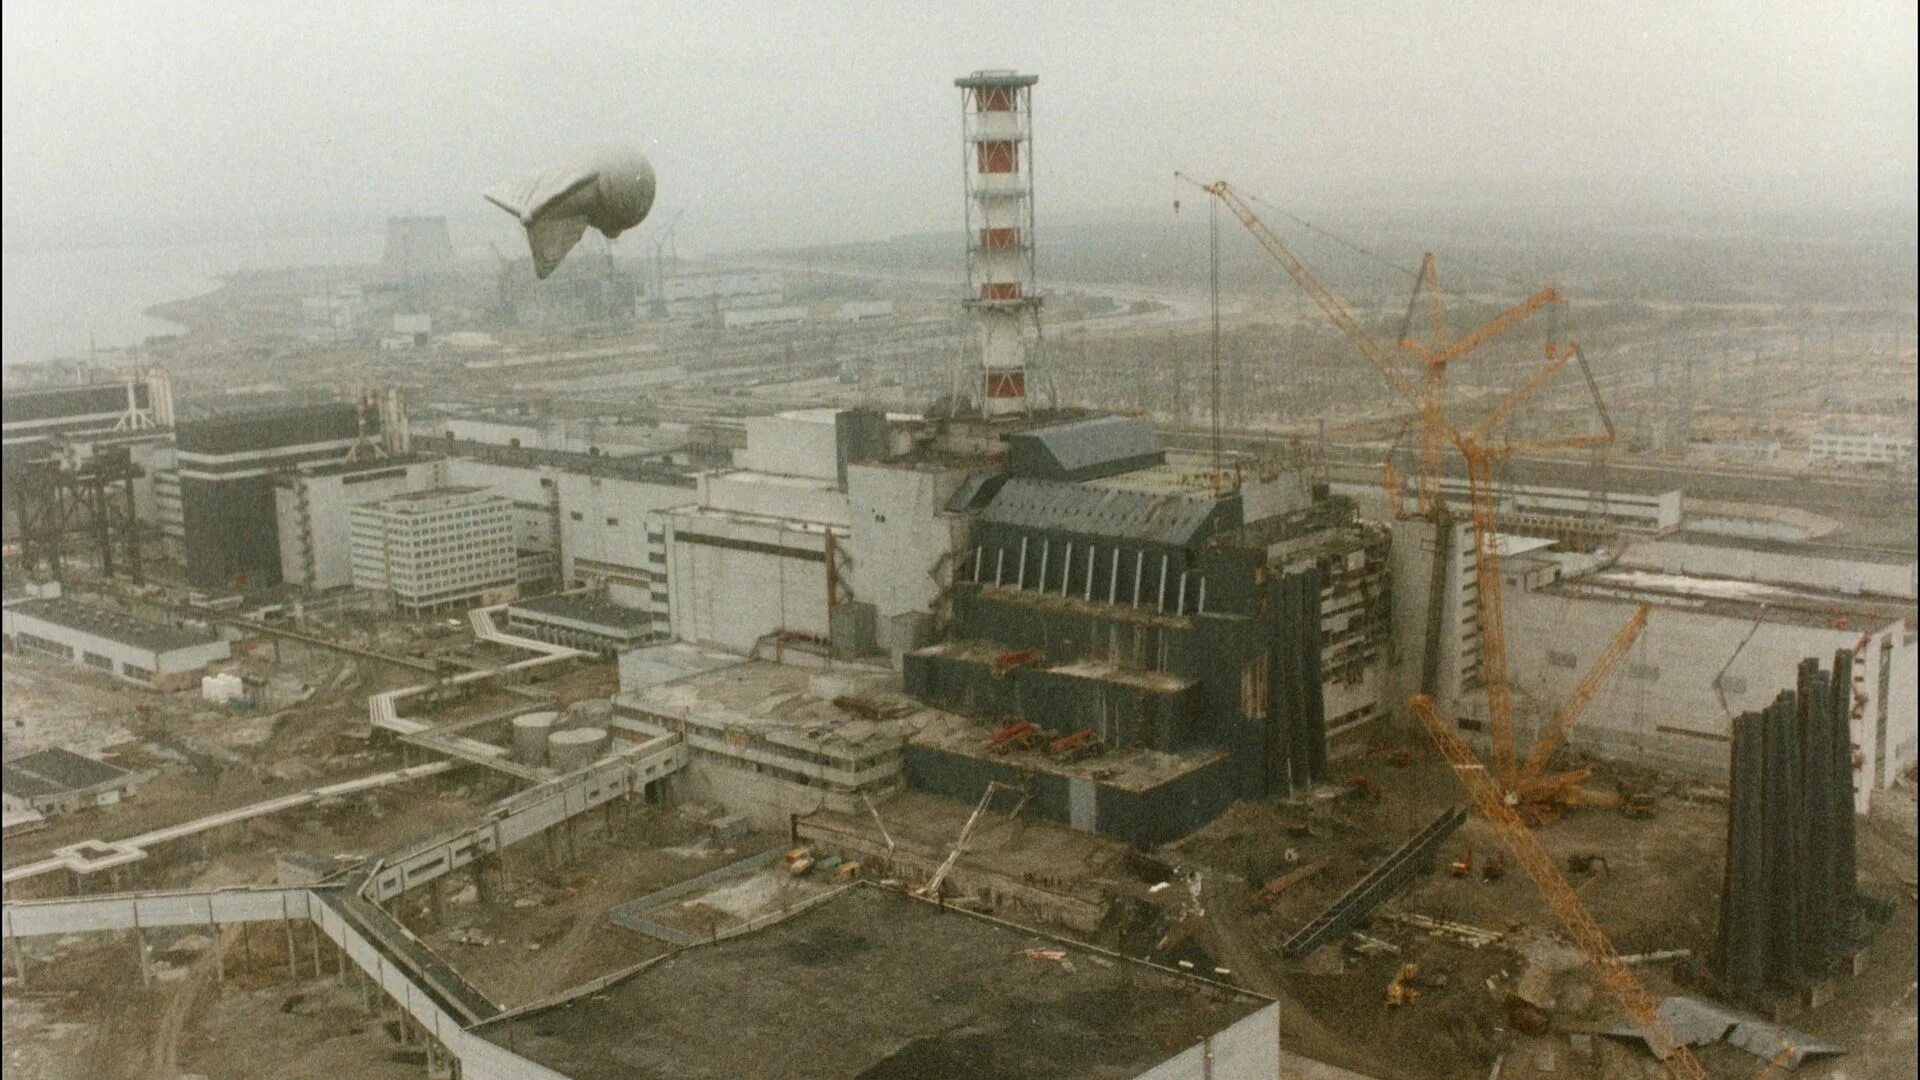 Ядерный город в украине. Чернобыльская АЭС 1986. 4 Энергоблок ЧАЭС 1986. Разрушенный 4 энергоблок ЧАЭС. ЧАЭС 1986 26 апреля.